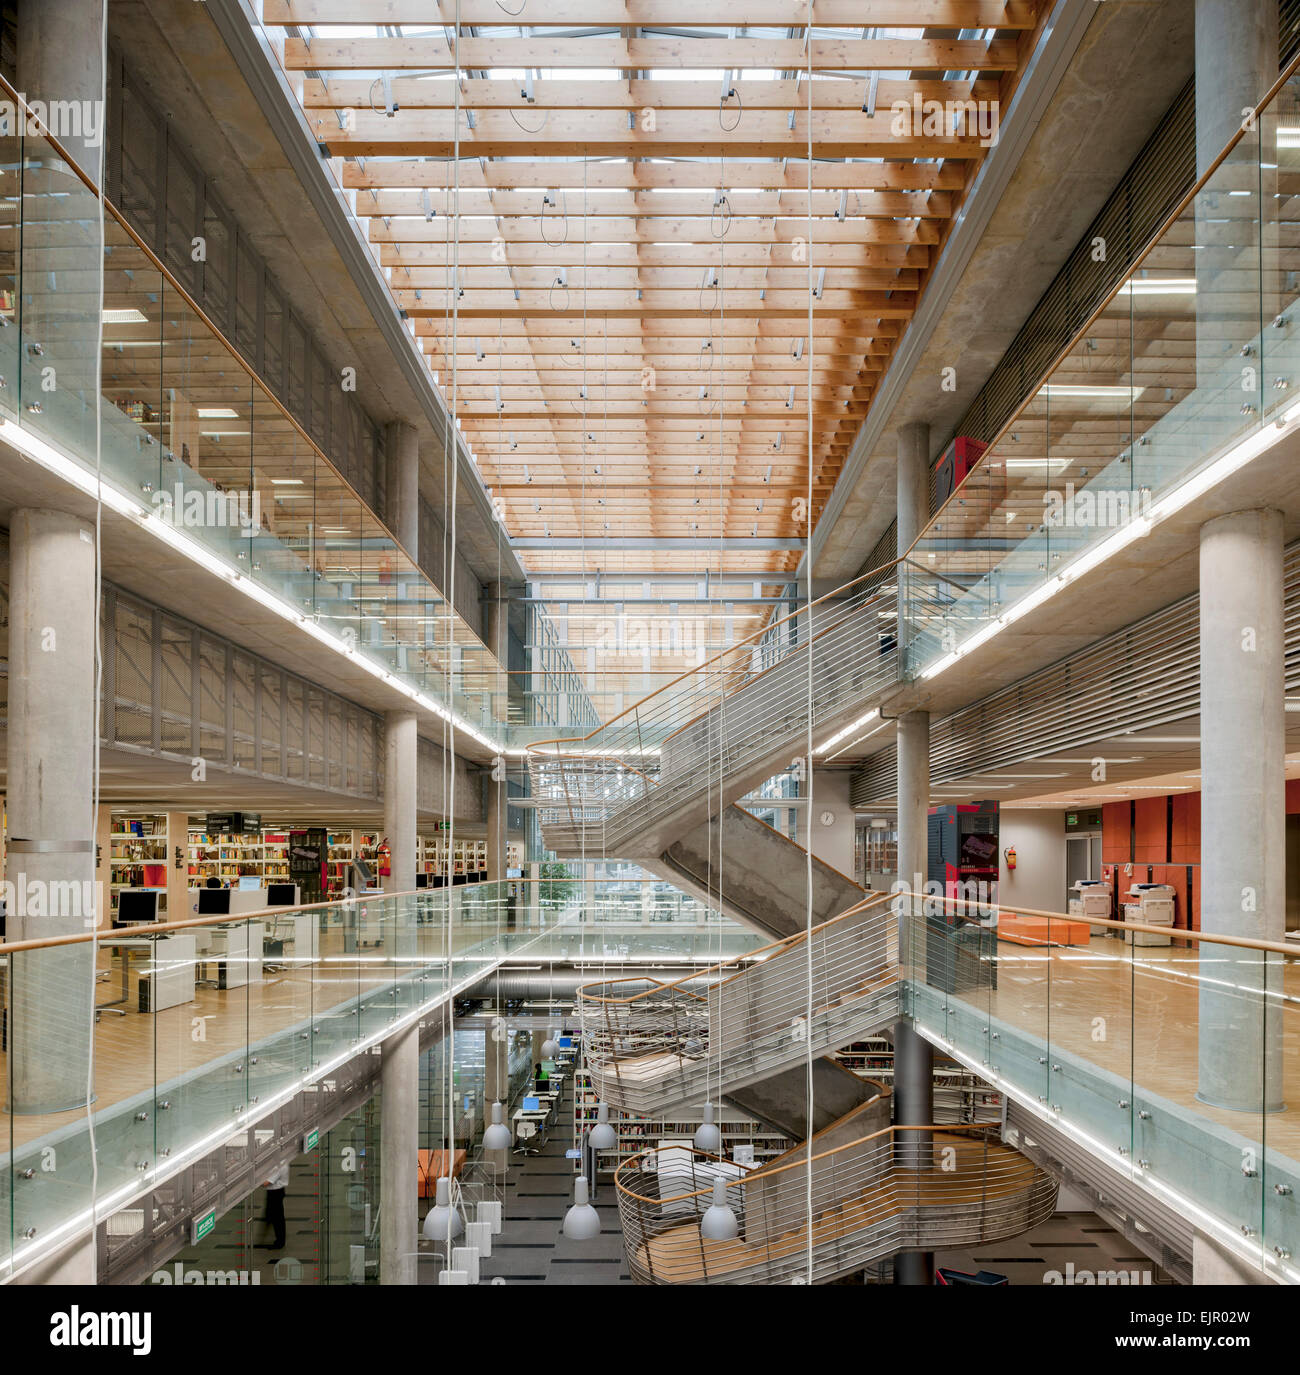 Vue sur l'atrium et la bibliothèque comme vu à partir du premier étage.  Centre d'information scientifique et universitaire, Katowice, Pologne.  Arkien Photo Stock - Alamy